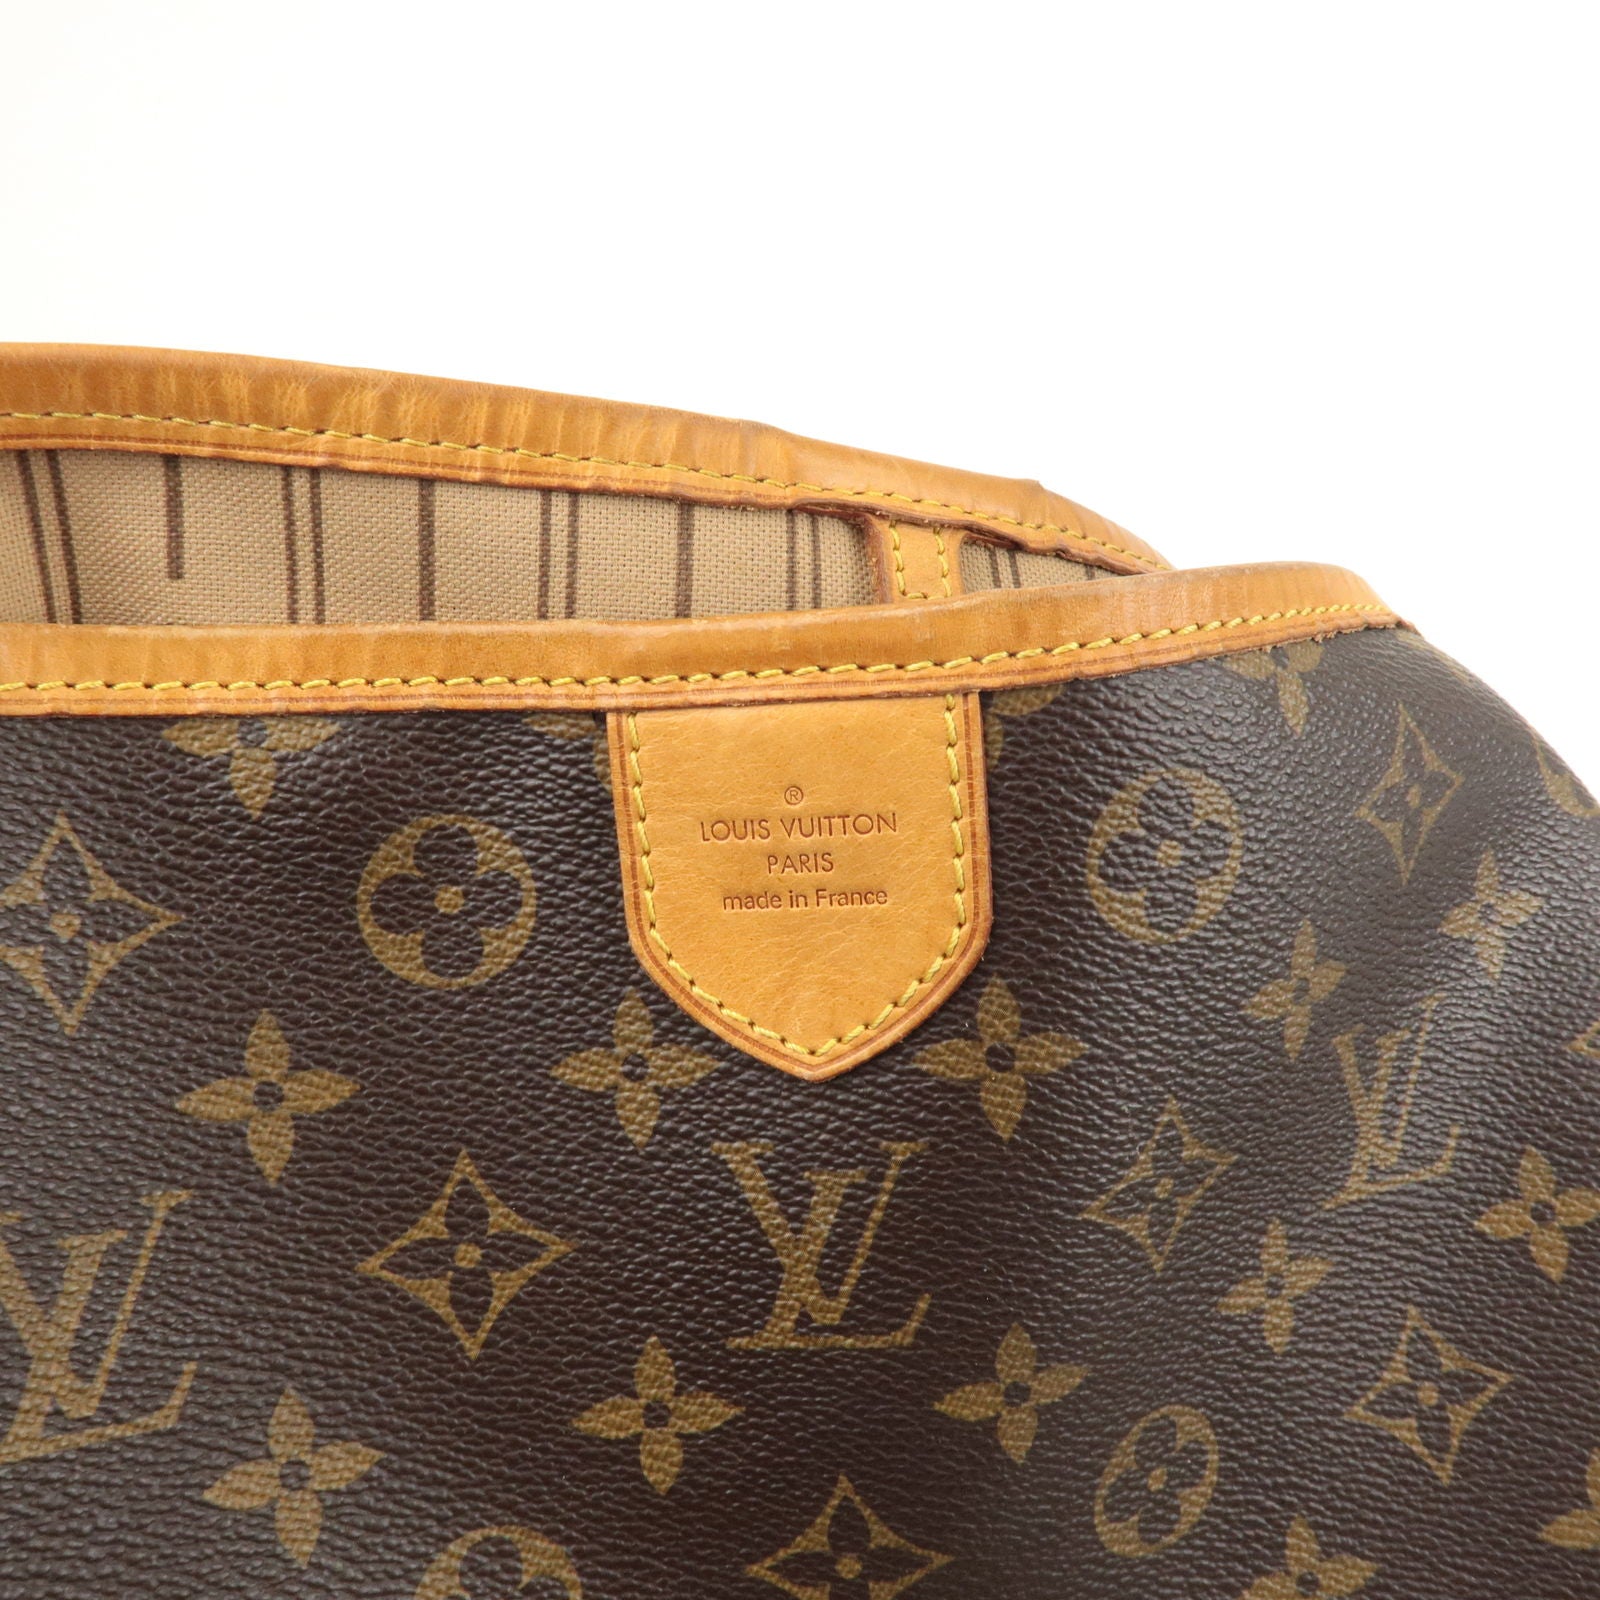 Louis Vuitton, Bags, Louis Vuitton Delightful